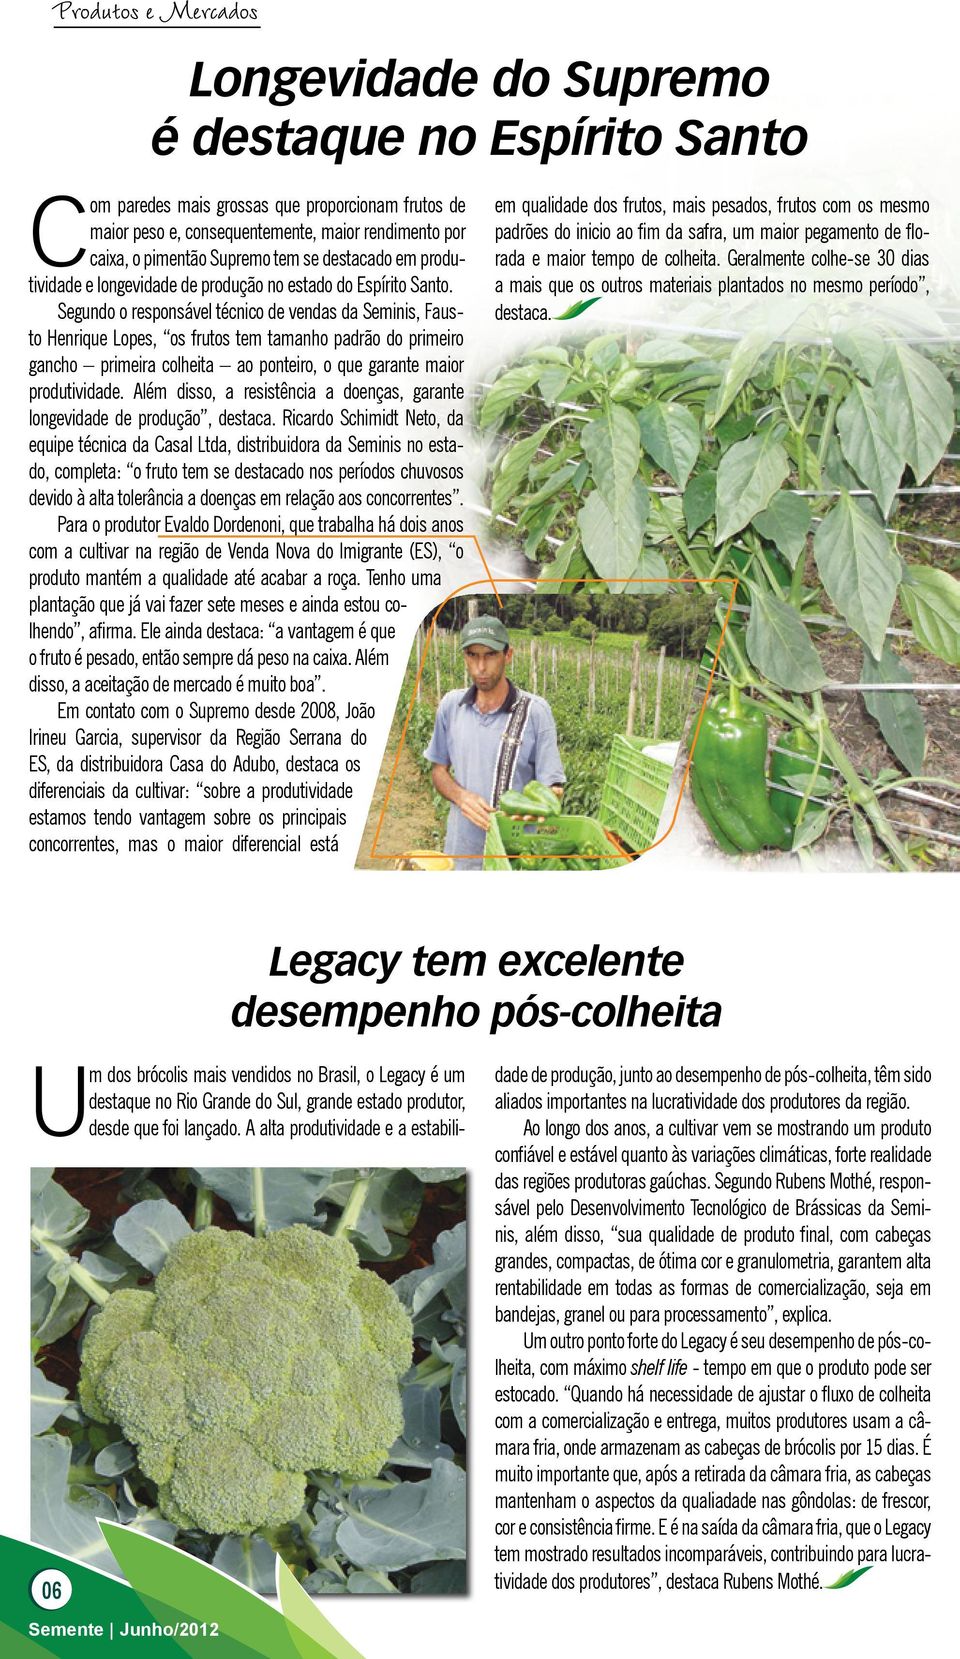 Segundo o responsável técnico de vendas da Seminis, Fausto Henrique Lopes, os frutos tem tamanho padrão do primeiro gancho primeira colheita ao ponteiro, o que garante maior produtividade.